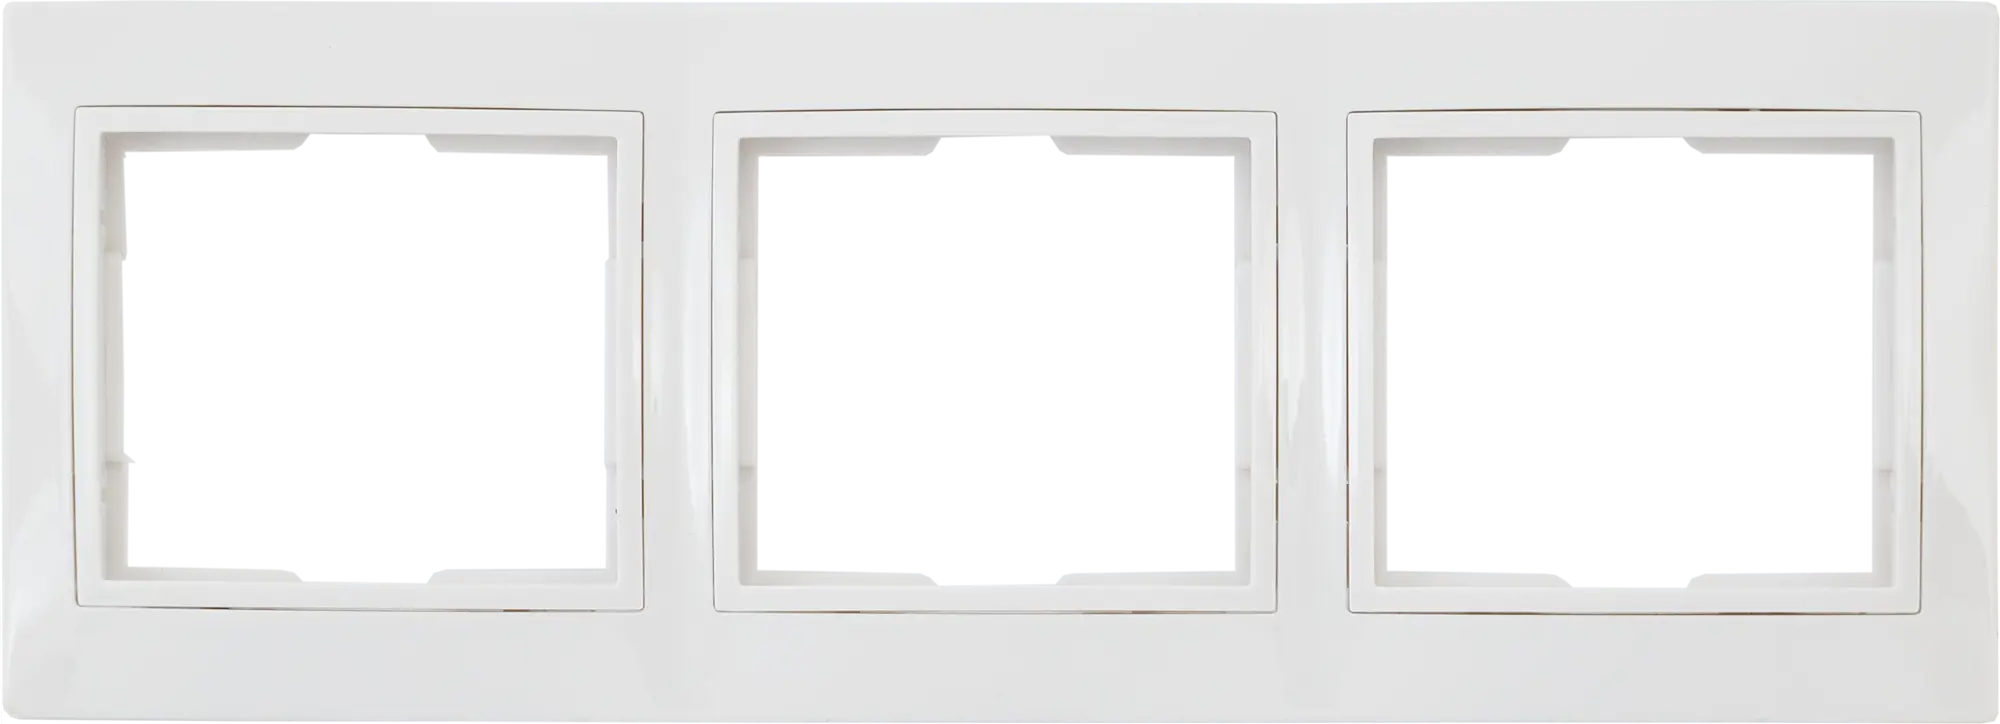 Рамка для розеток и выключателей горизонтальная Таймыр 3 поста, цвет белый